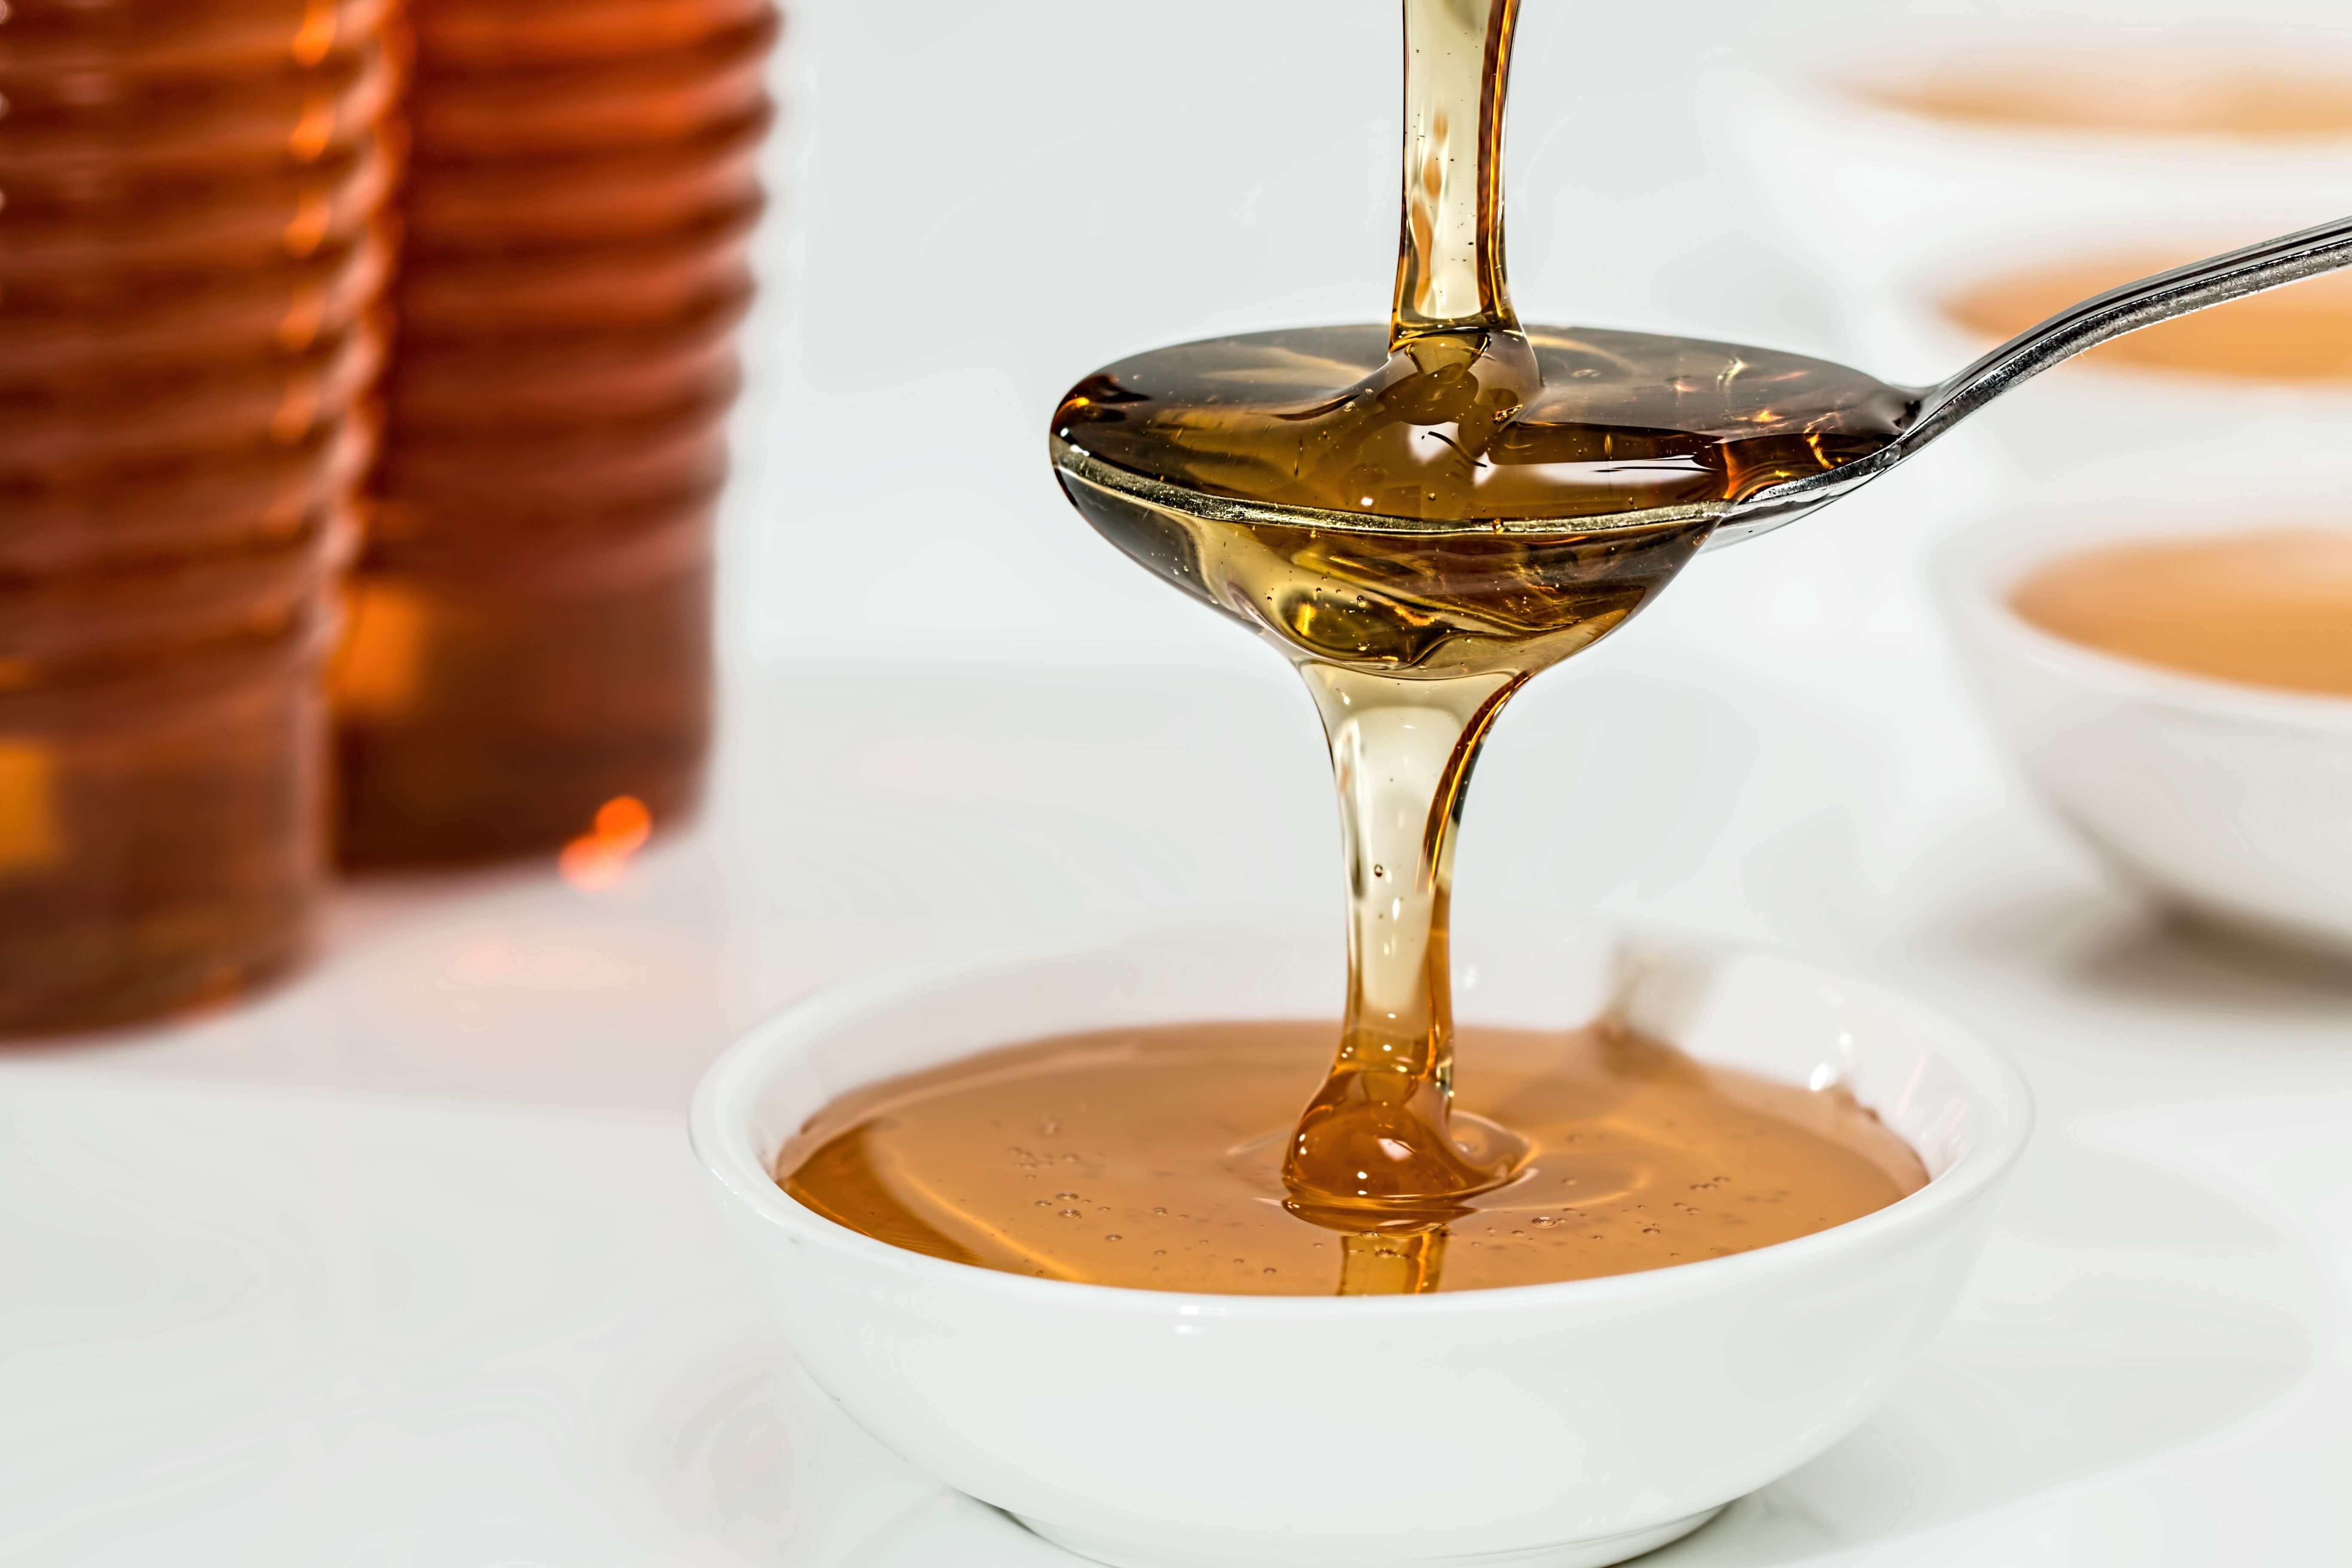 Flüssiger Honig und Sirup in Glasflaschen mit Ausgießer, dargestellt als alternative Süßmittel auf einem Holztisch.